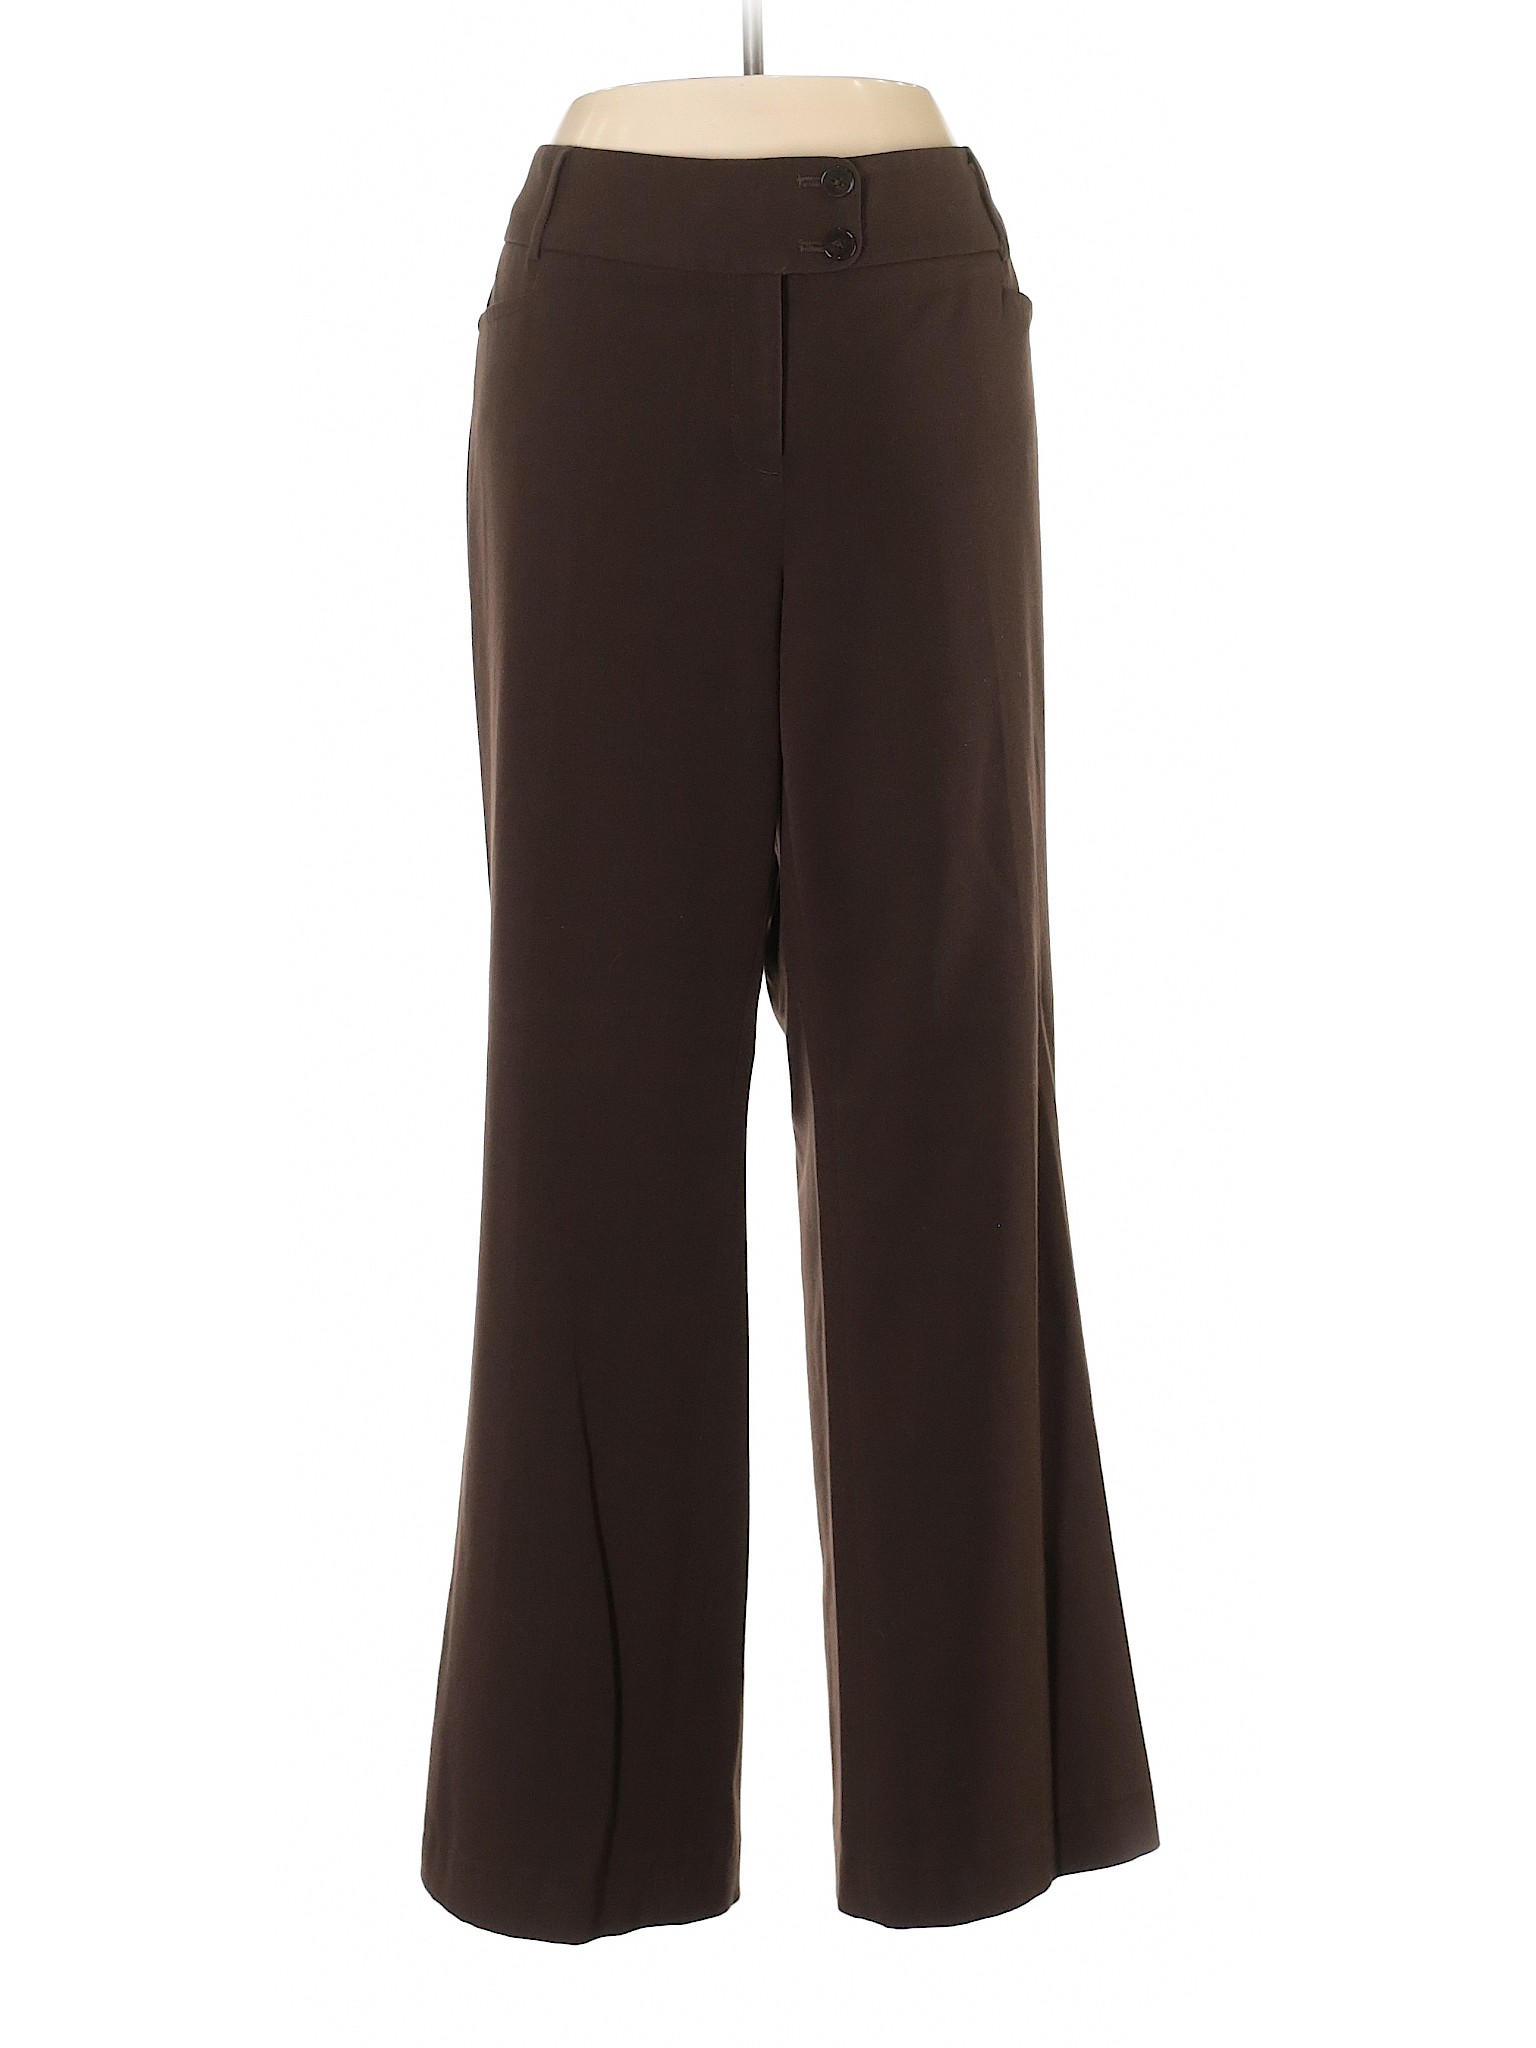 Rafaella Women Brown Dress Pants 12 | eBay